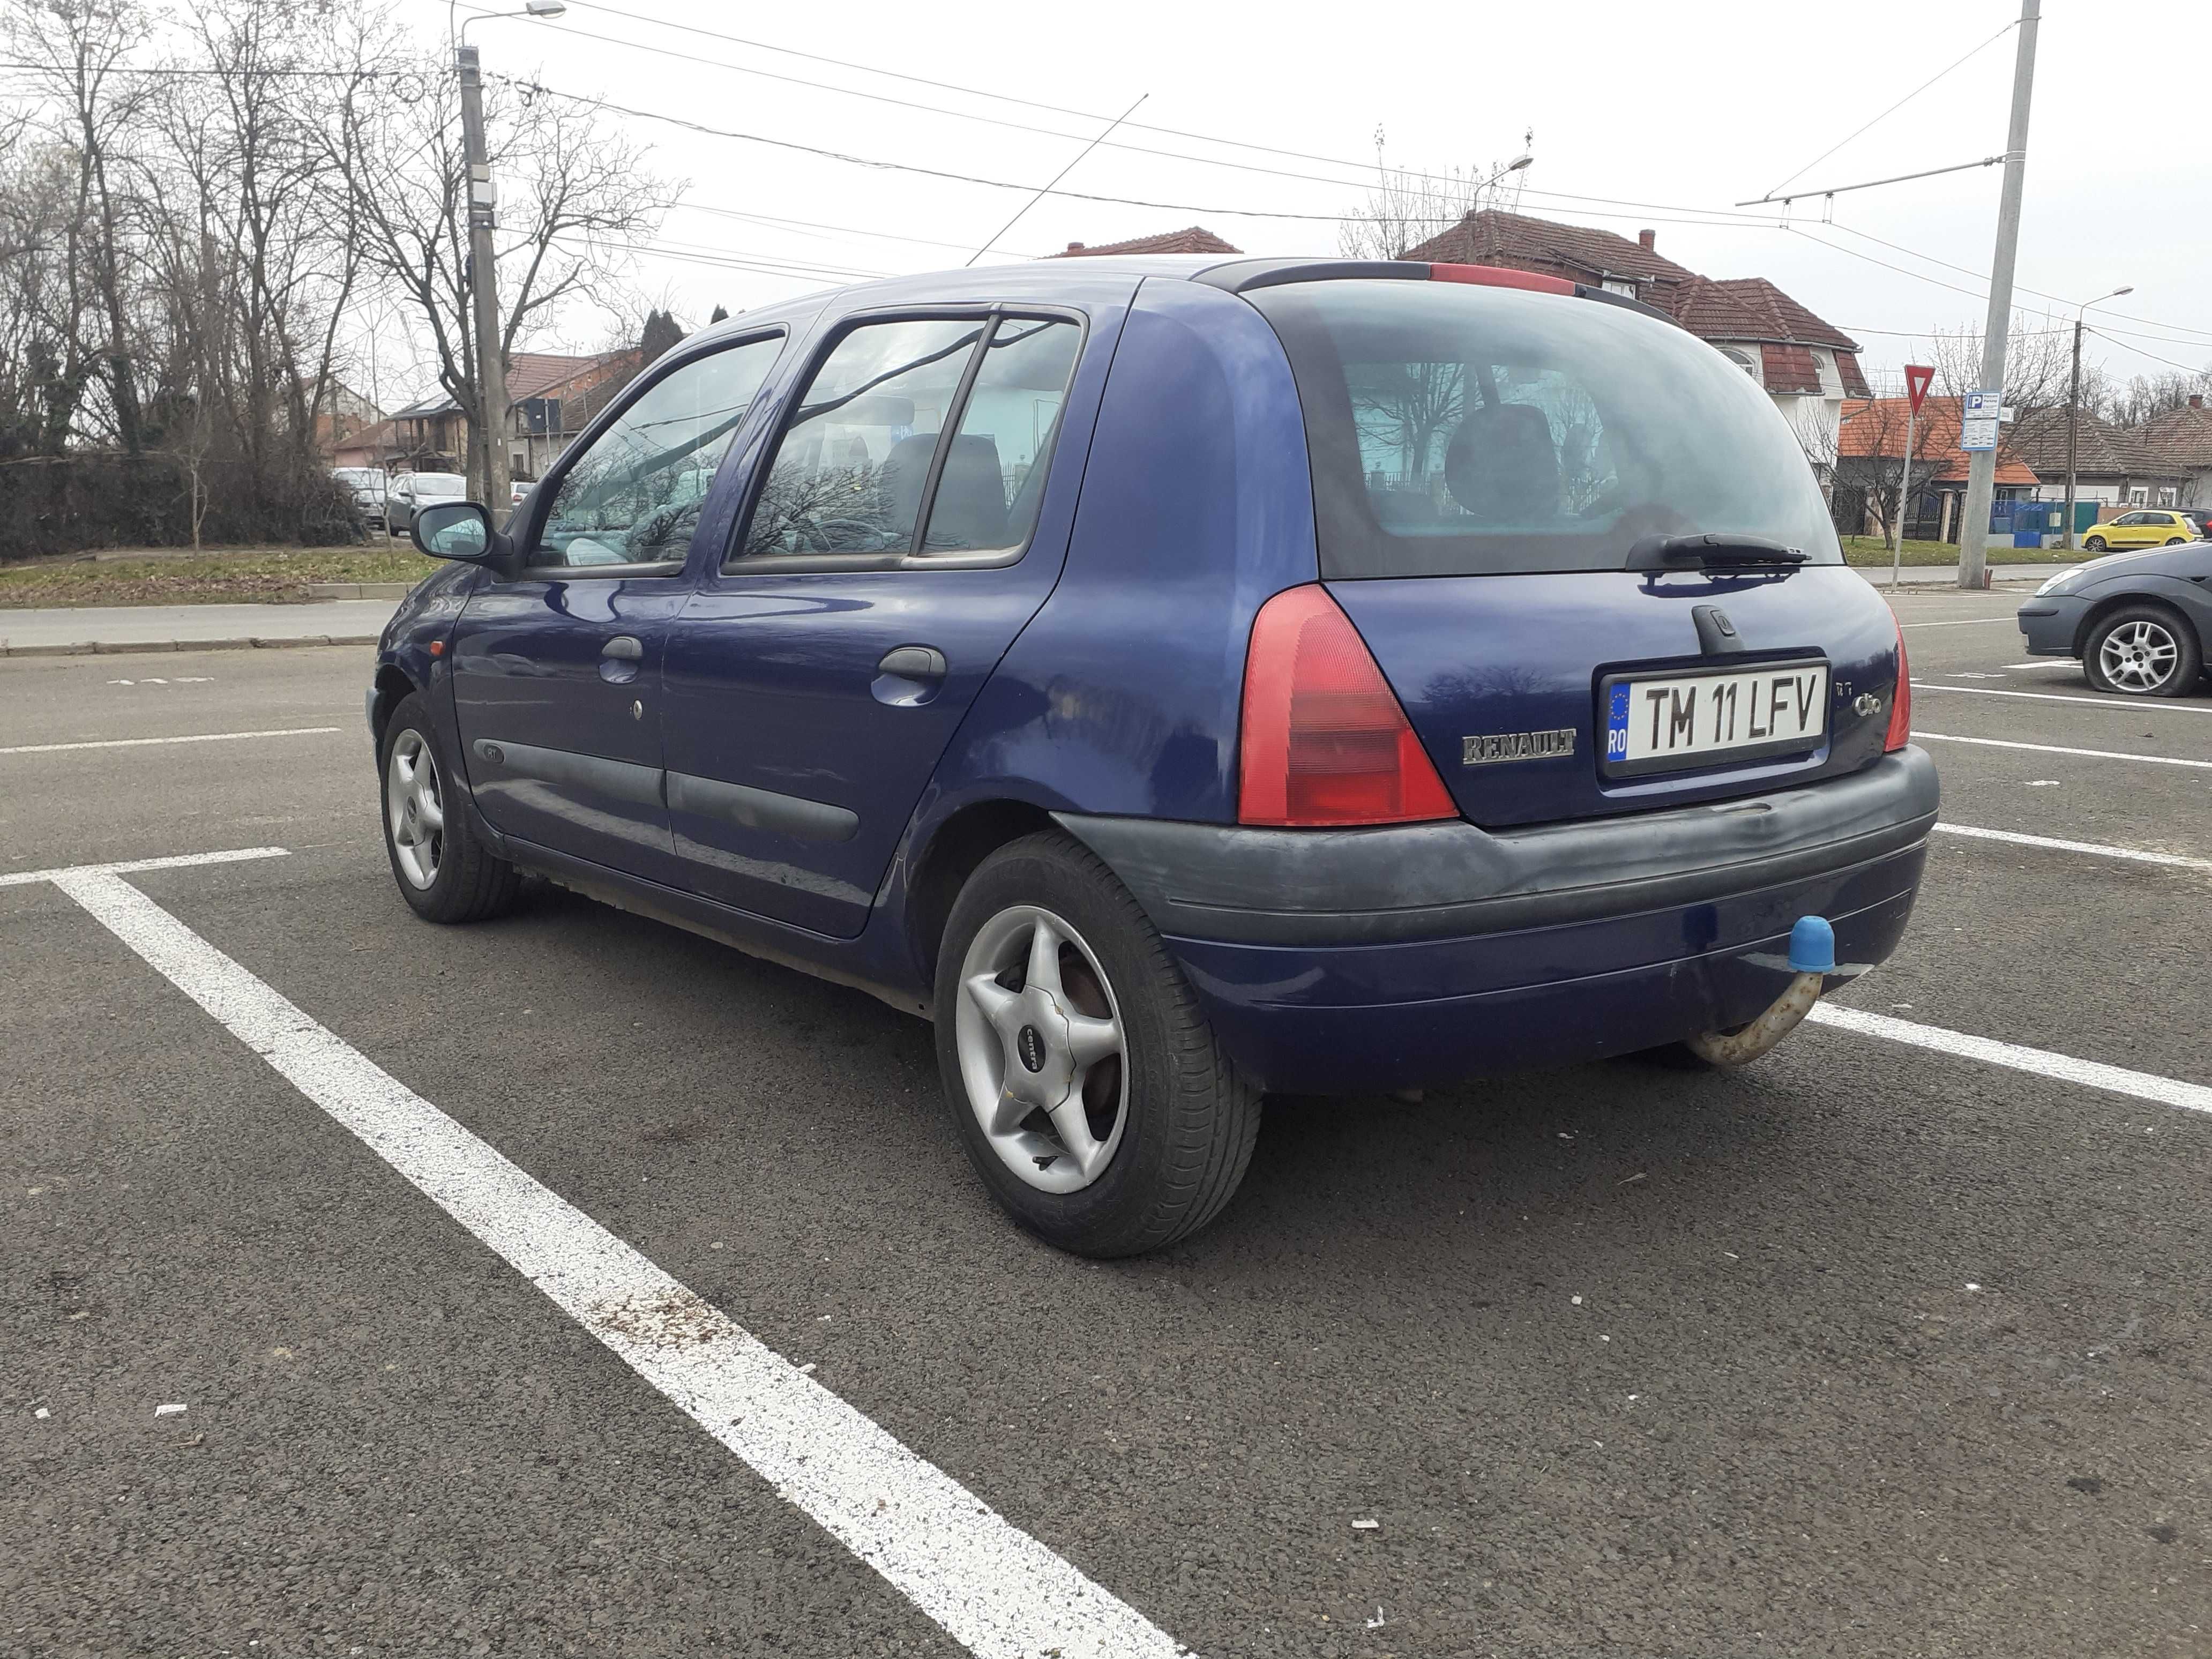 Renault Clio 1.2 i